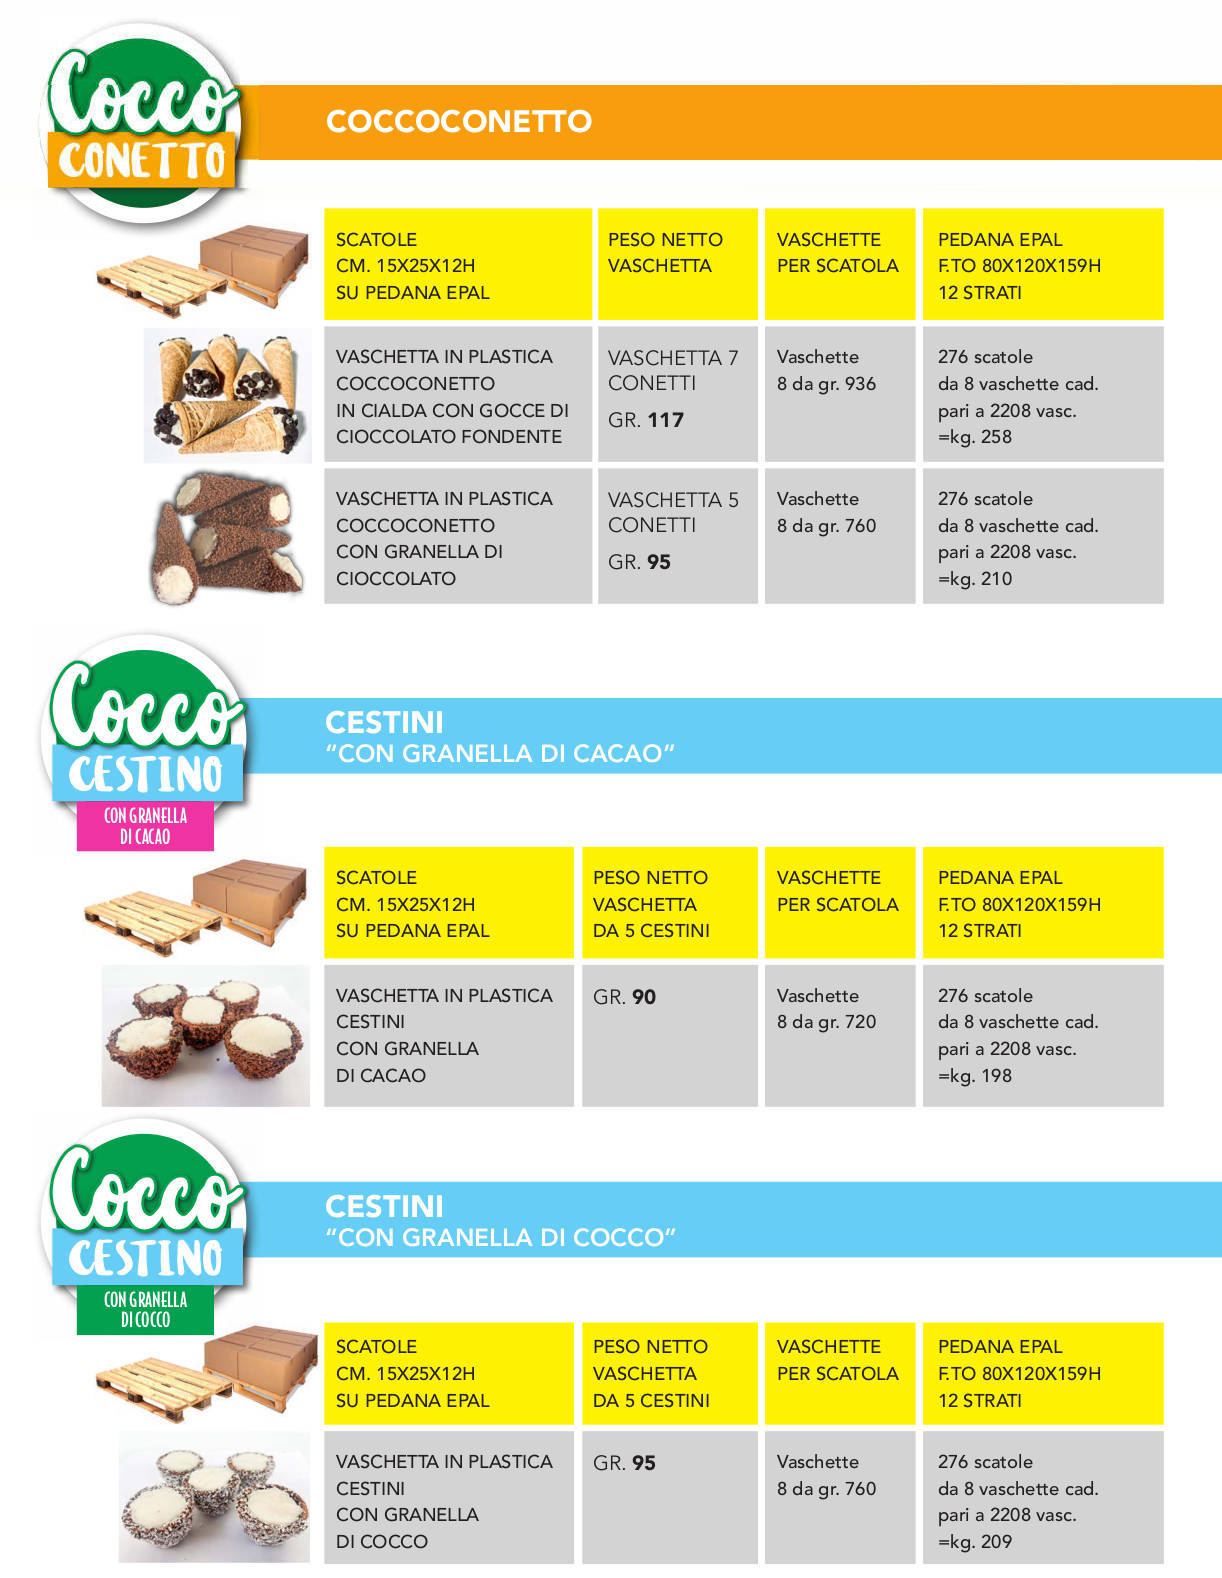 CoccoFruit cocco conetti e cocco cestini: mini dessert assortiti da banco e da frigo - GDO grande distribuzione organizzata